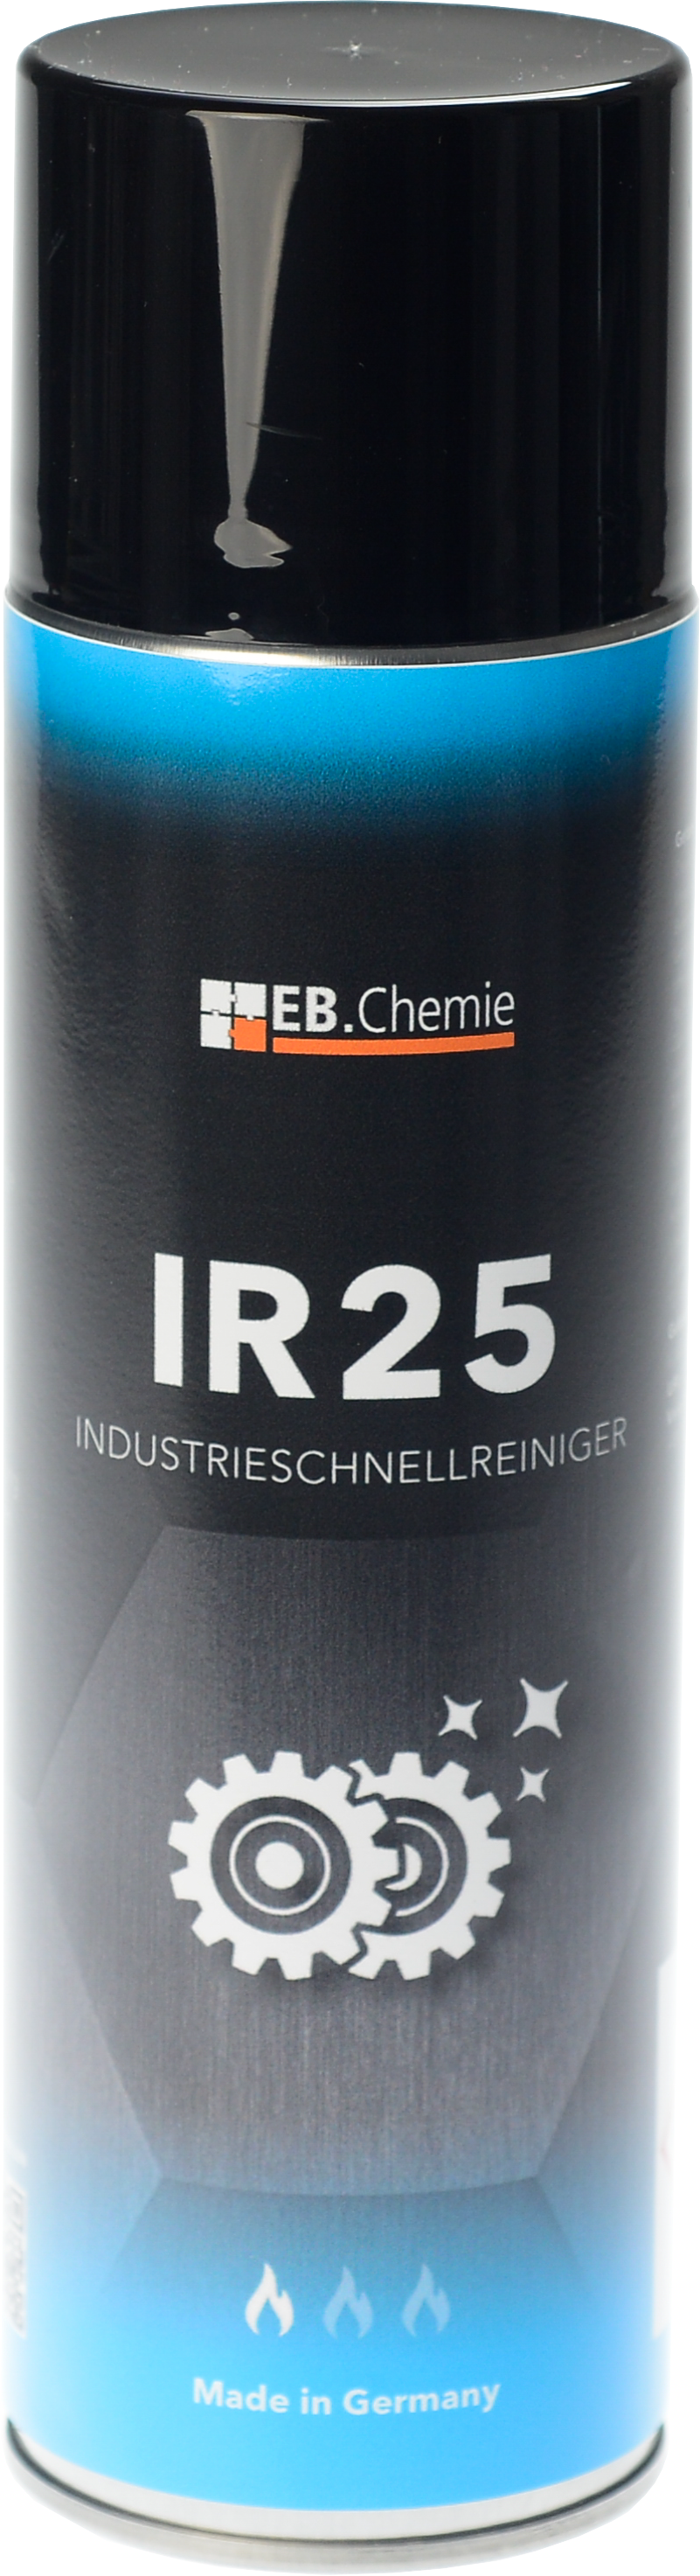 IR25 - Industrieschnellreiniger